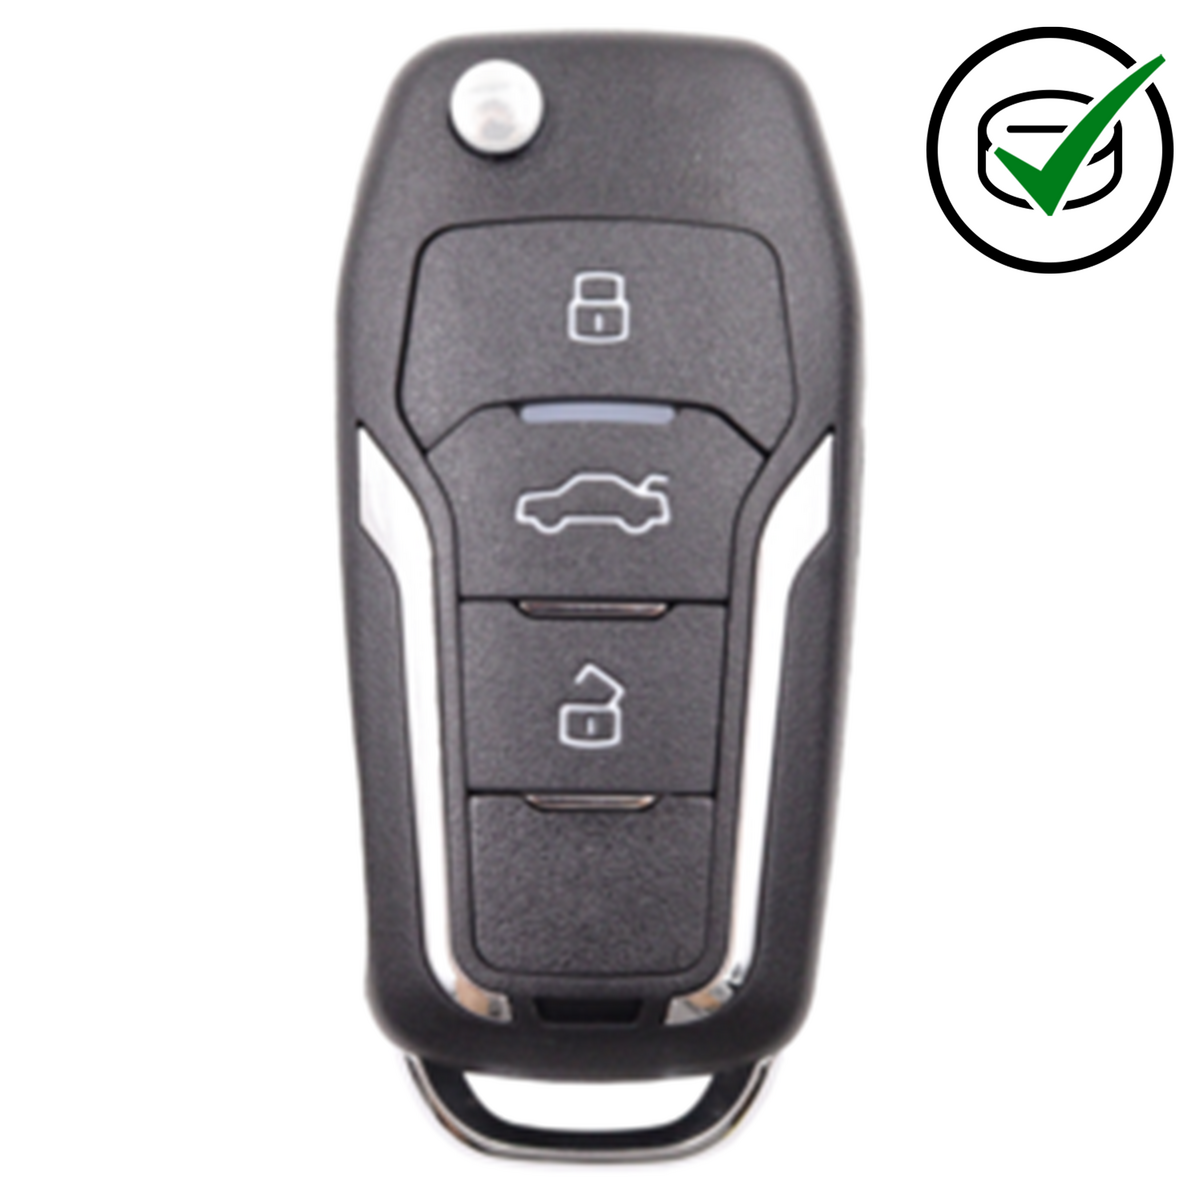 KeyDIY 3 Button Flip Key to suit NB12-3